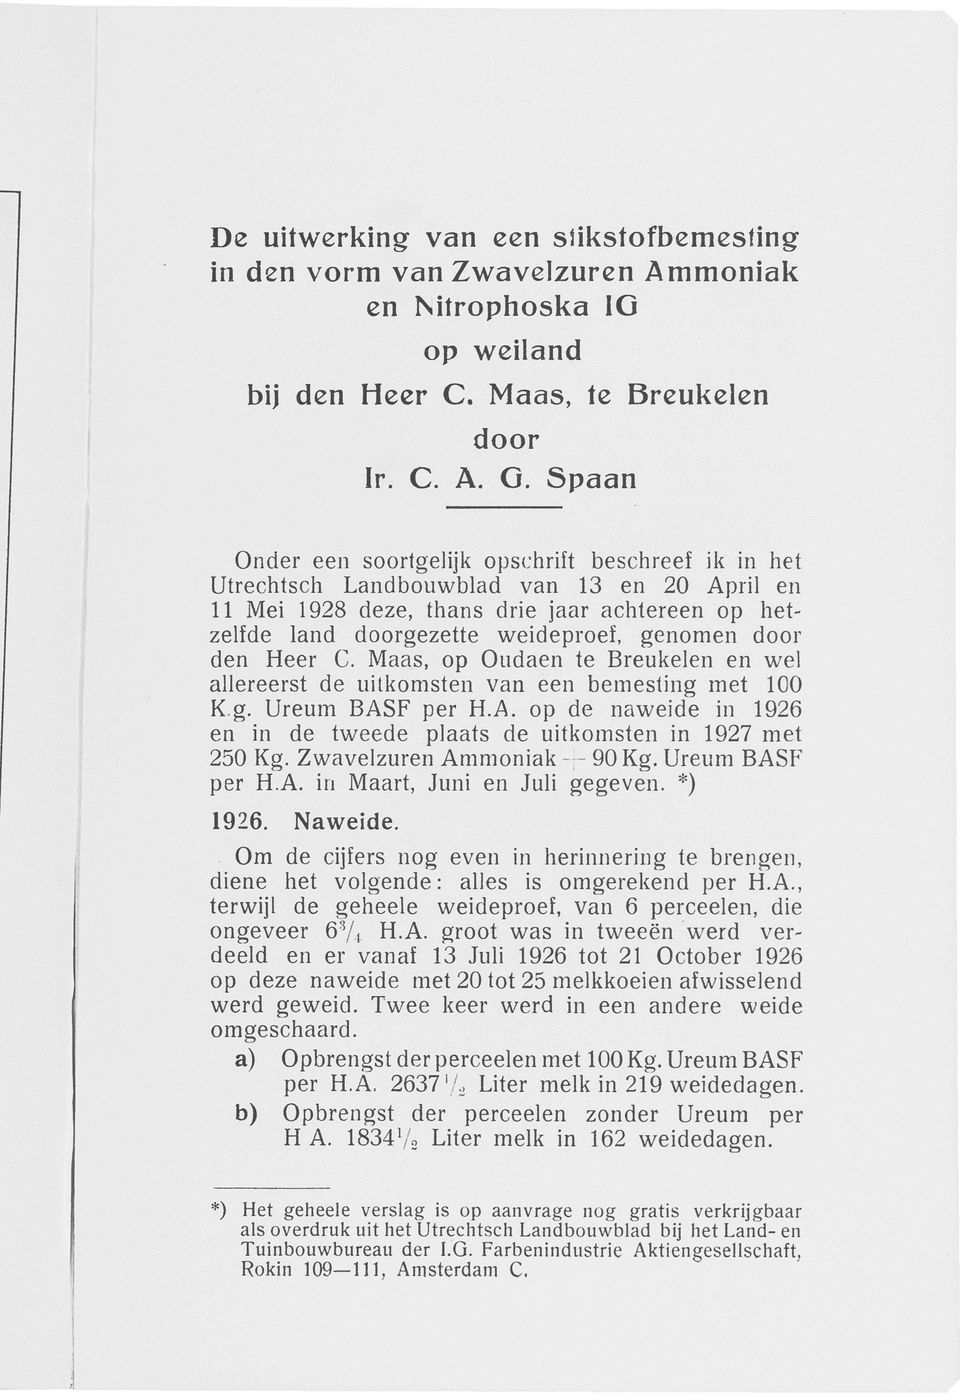 den Heer C. Maas, op Oudaen te Breukelen en wel allereerst de uitkomsten van een bemesting met 100 K g. Ureum BASF per H.A. op de naweide in 1926 en in de tweede plaats de uitkomsten in 1927 met 250 Kg.